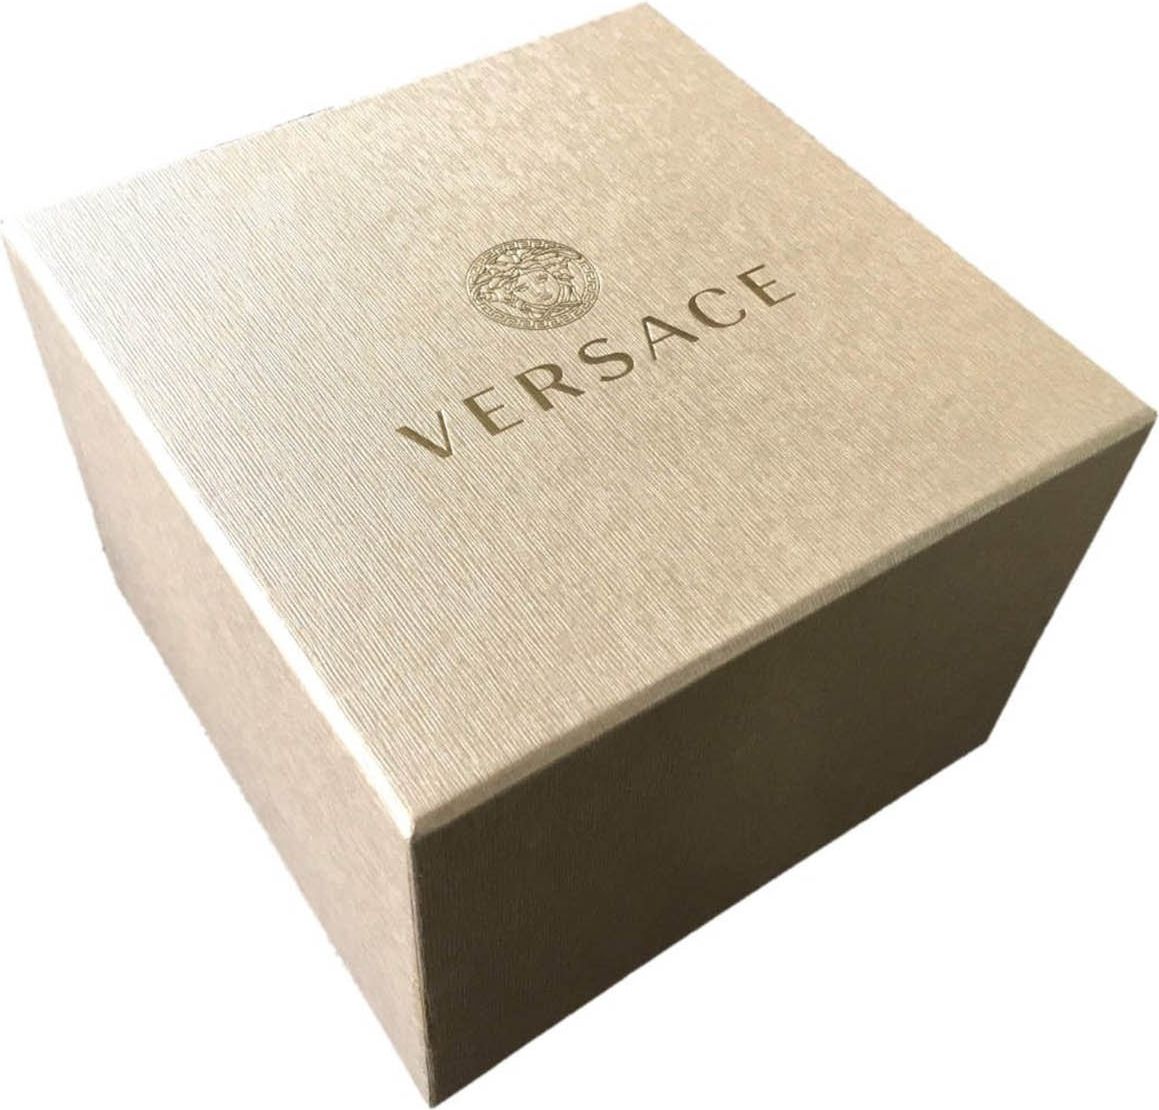 Versace VEV700119 Chrono Classic heren horloge 44 mm Zilver